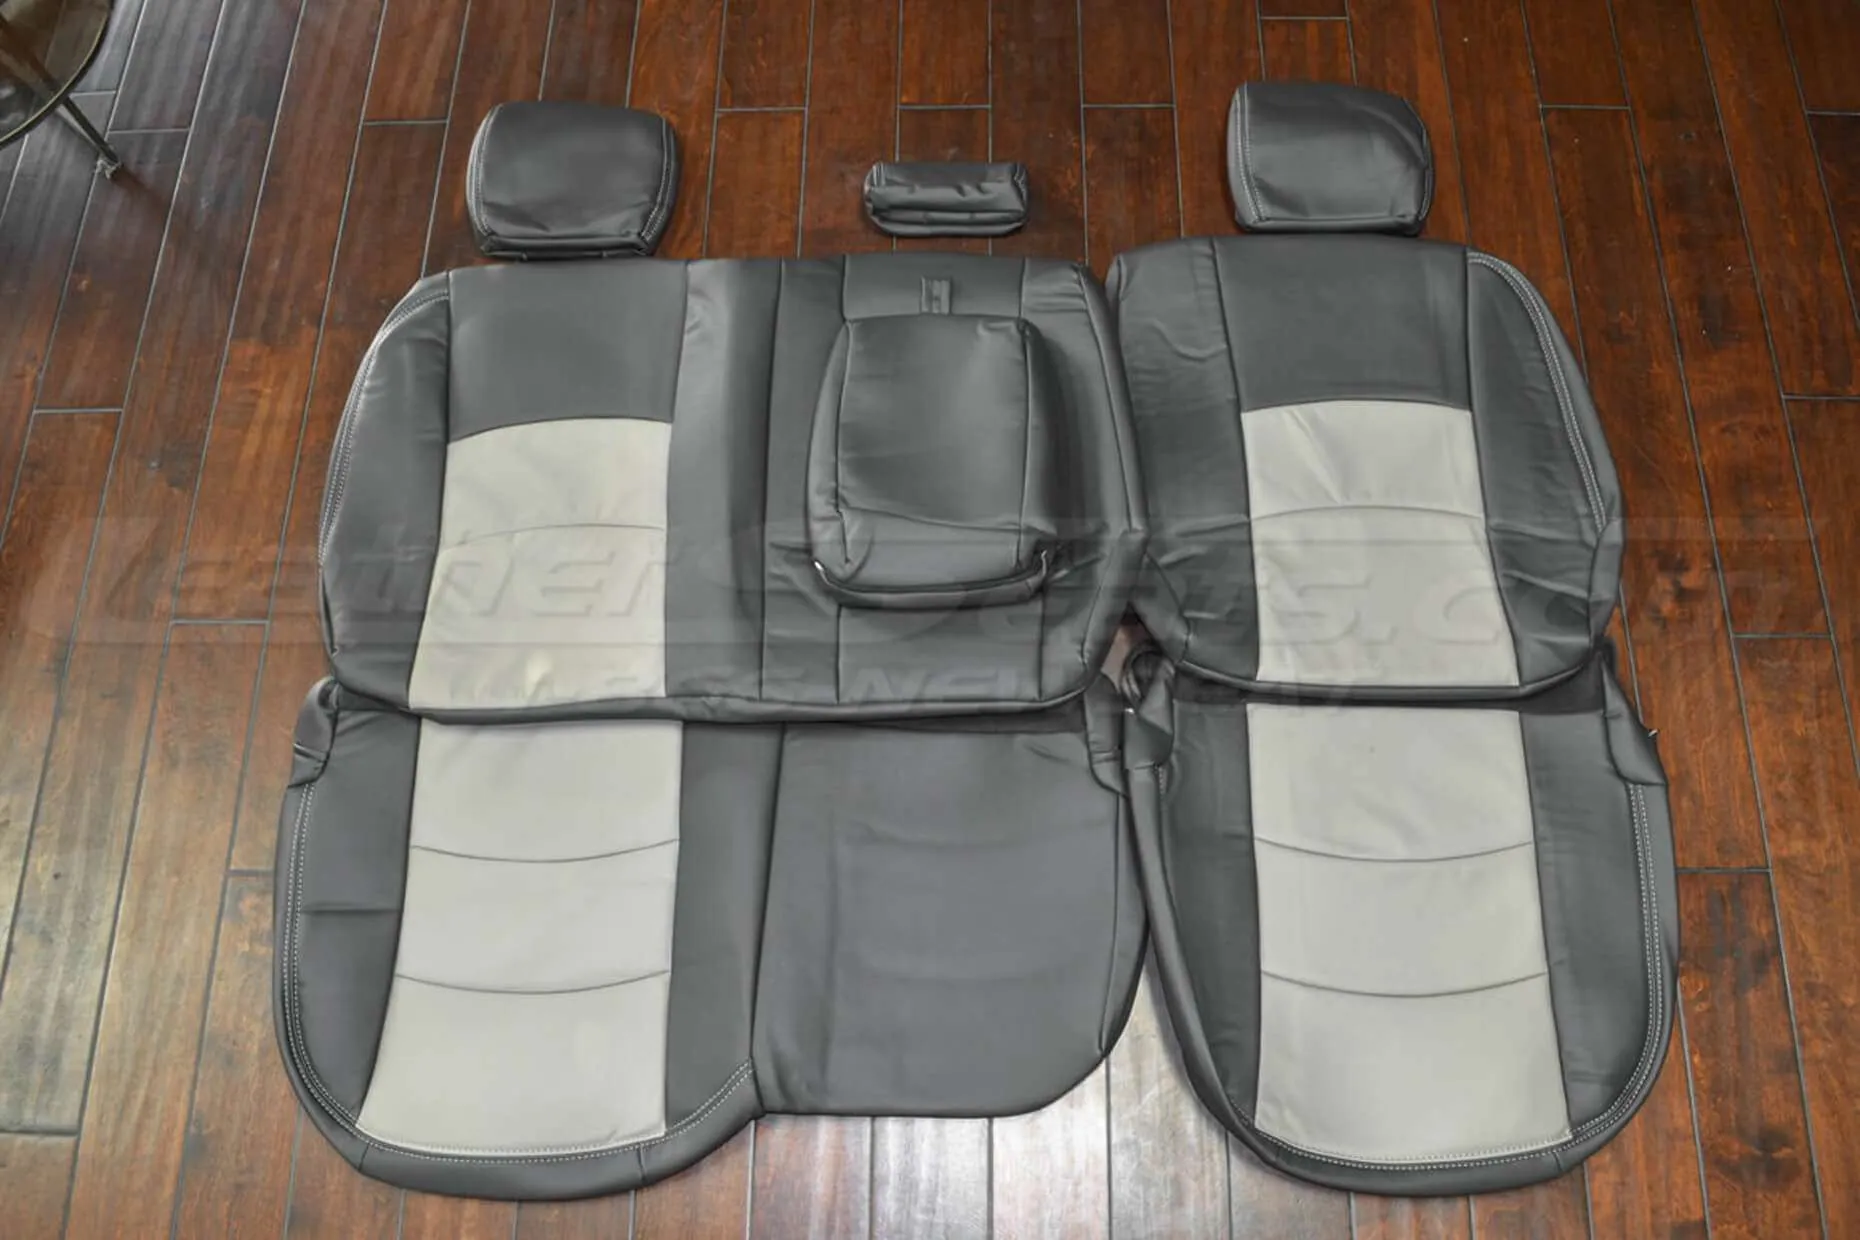 02-12 Dodge Ram Upholstery Kit - Dark Graphite & Slate - Rear seat upholstery with armrest